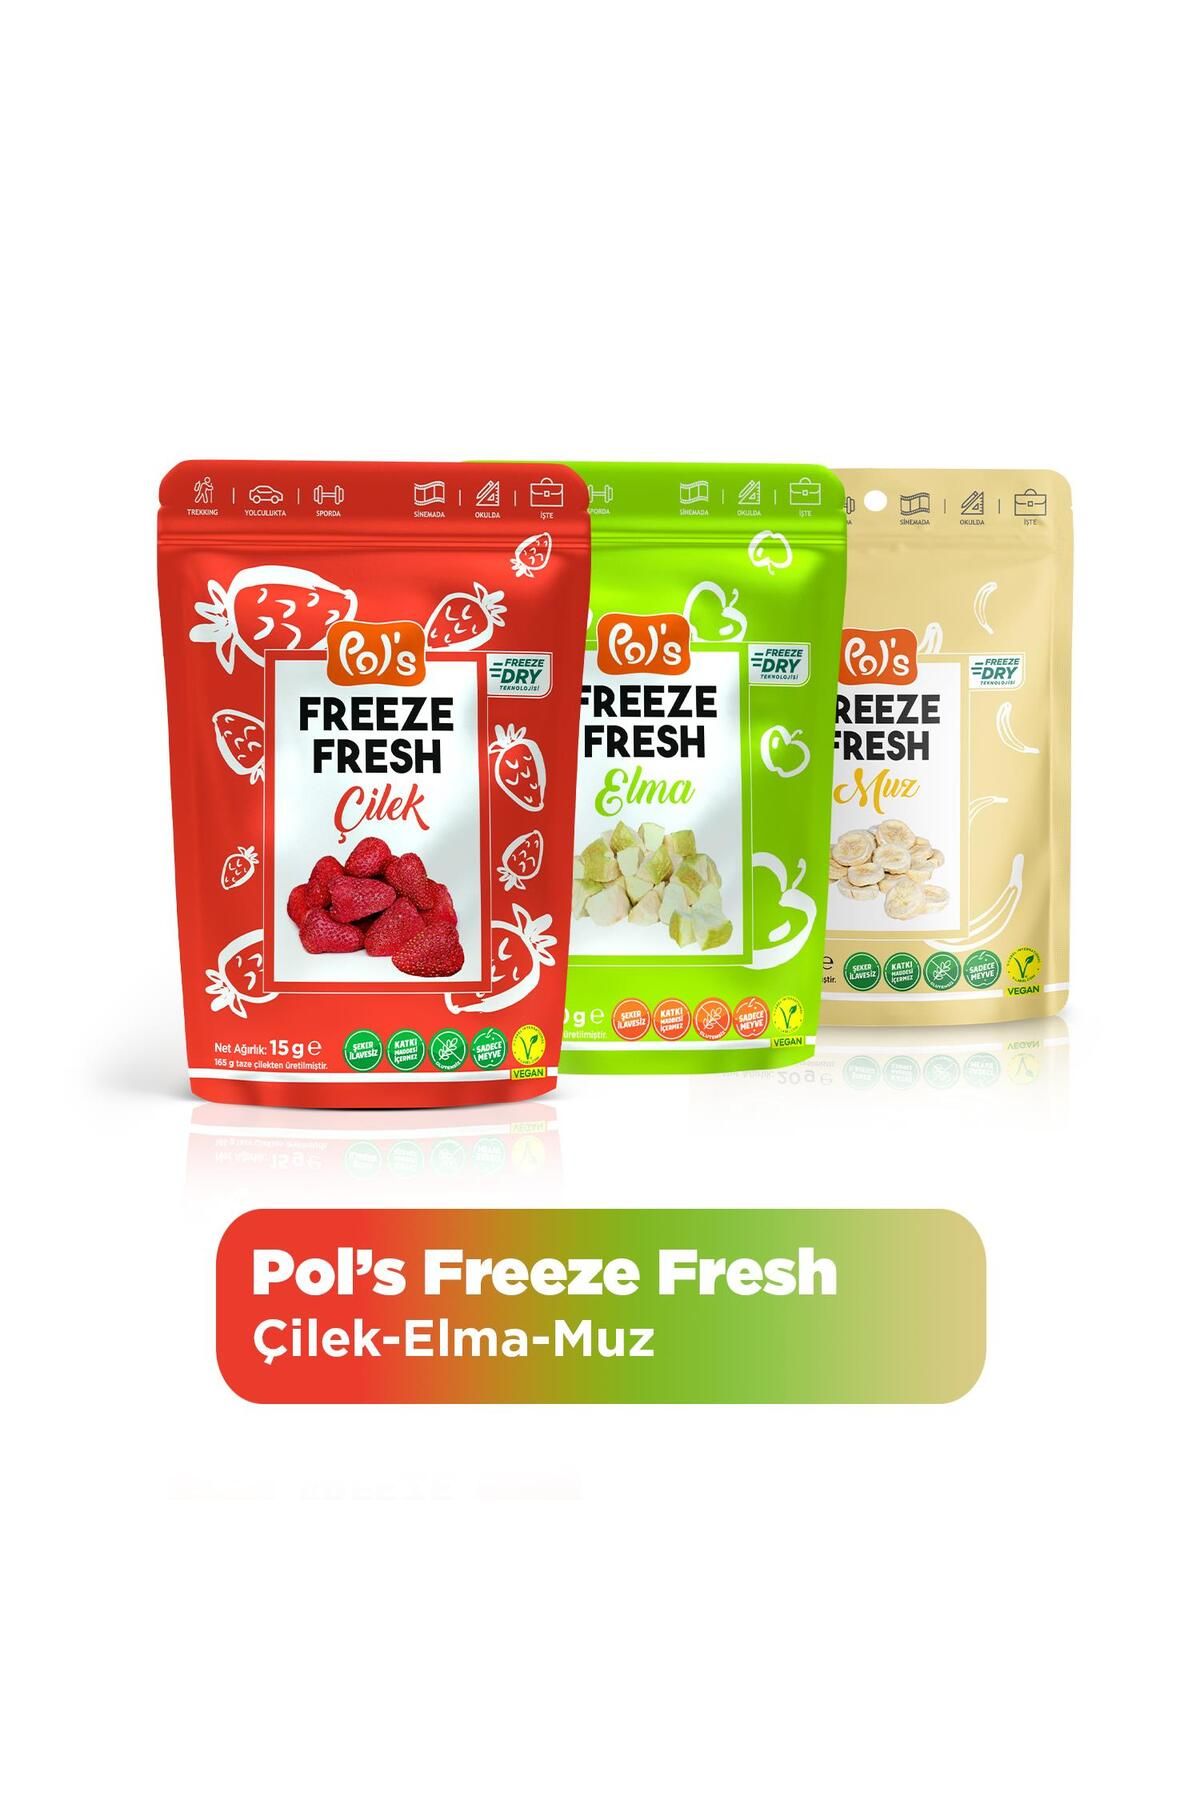 Pol's Pol’s Freeze Fresh Çilek 15 G X 1 Adet, Elma 15 G X 1 Adet, Muz 20 G X 1 Adet Freeze Dry Dondurulara